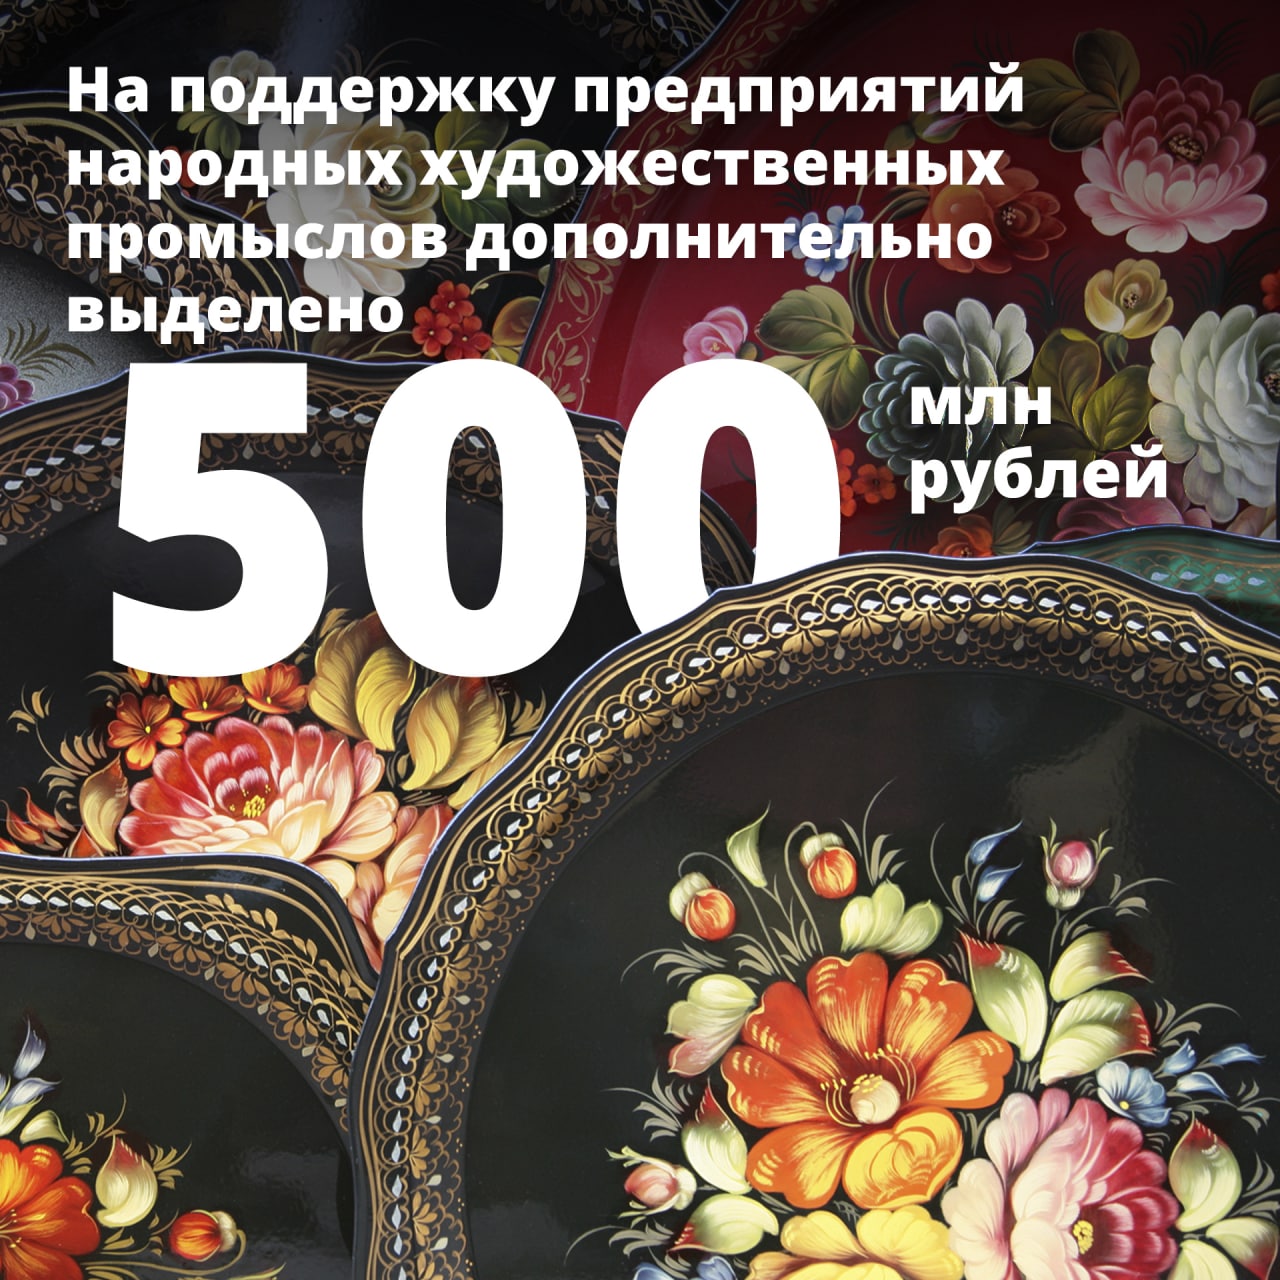 You are currently viewing Предприятия народных художественных промыслов получат дополнительную поддержку в размере 500 млн рублей